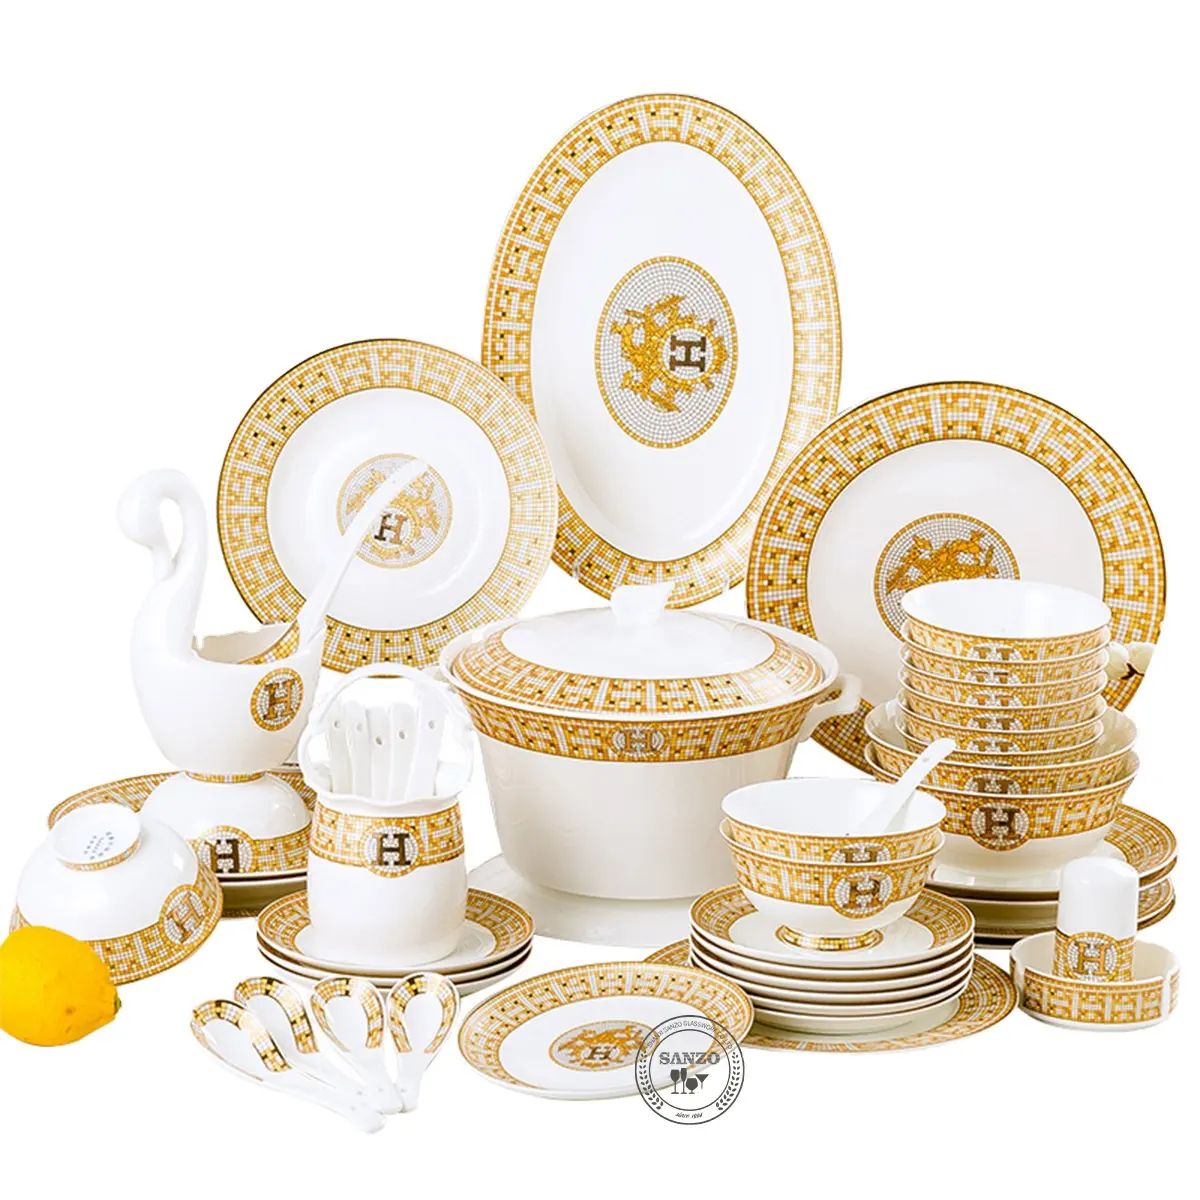 Neues Design Kreative Keramik platte Luxus Gold und Weiß Hochzeits empfang Keramik Essteller